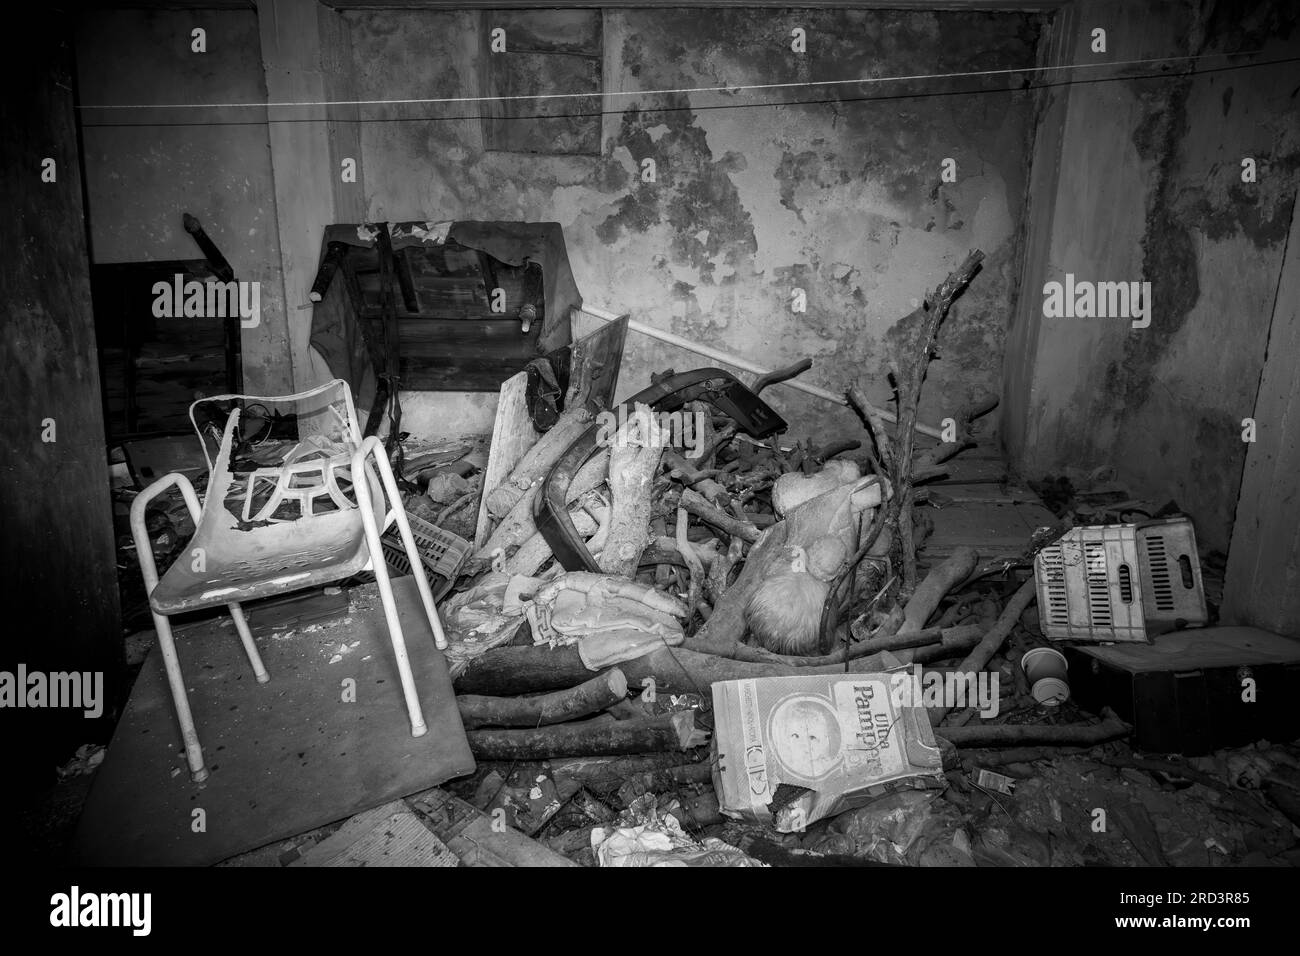 Ein Zimmer in einem heruntergekommenen Haus voller Schutt, kaputte Möbel und allgemeinen Hausmüll. Ein Schwarzweißbild. Stockfoto